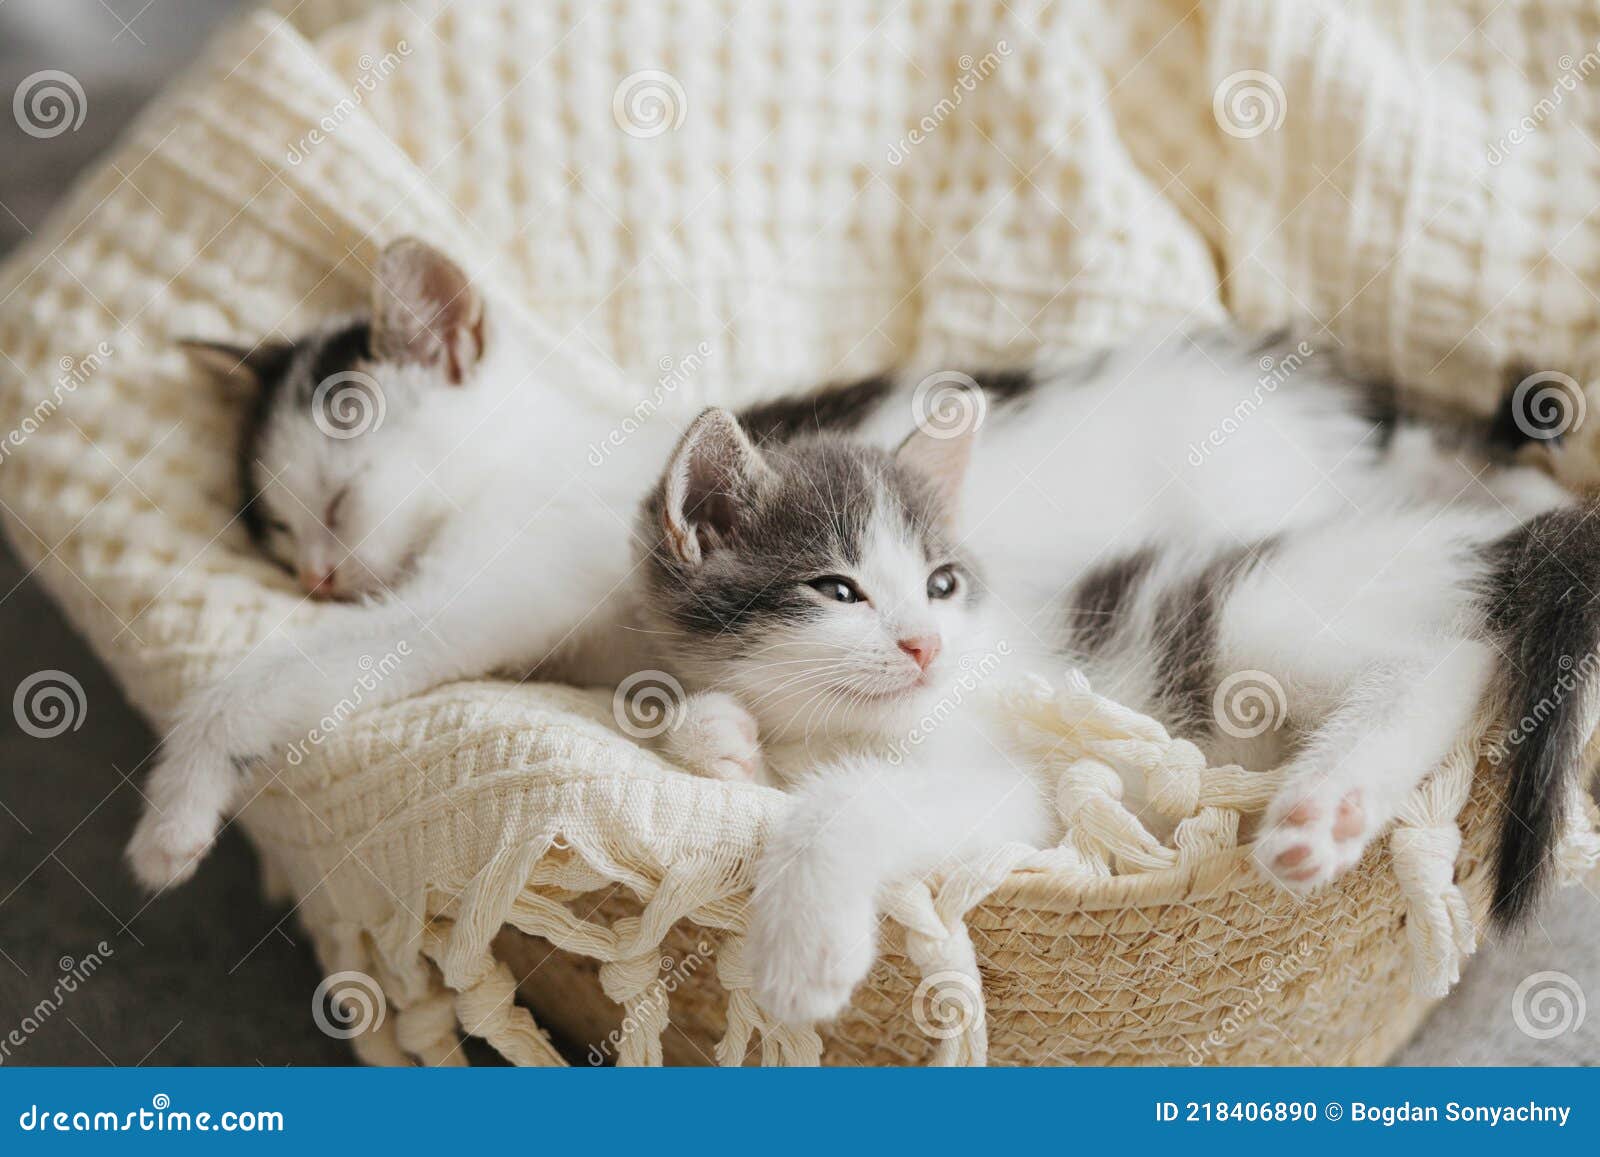 piccoli-gattini-carini-che-dormono-su-un